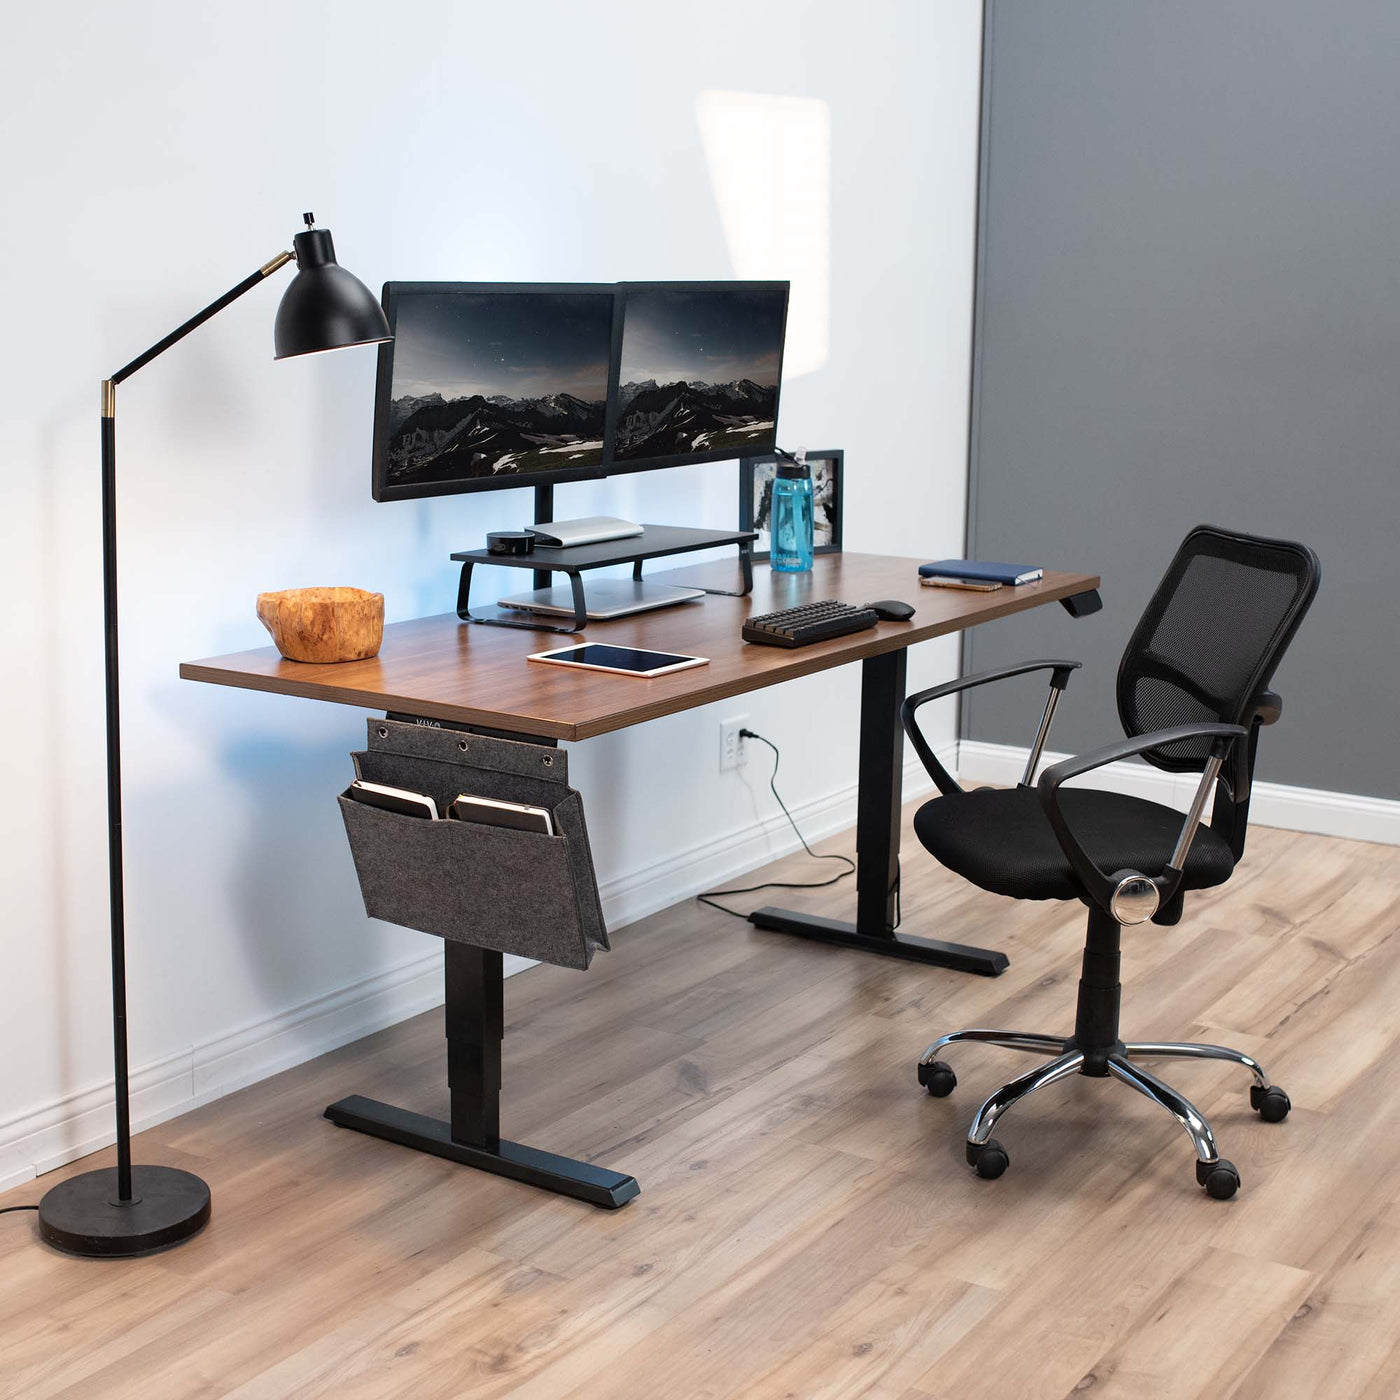 Fully furnished office space and desk setup with a desk-side pocket holder.